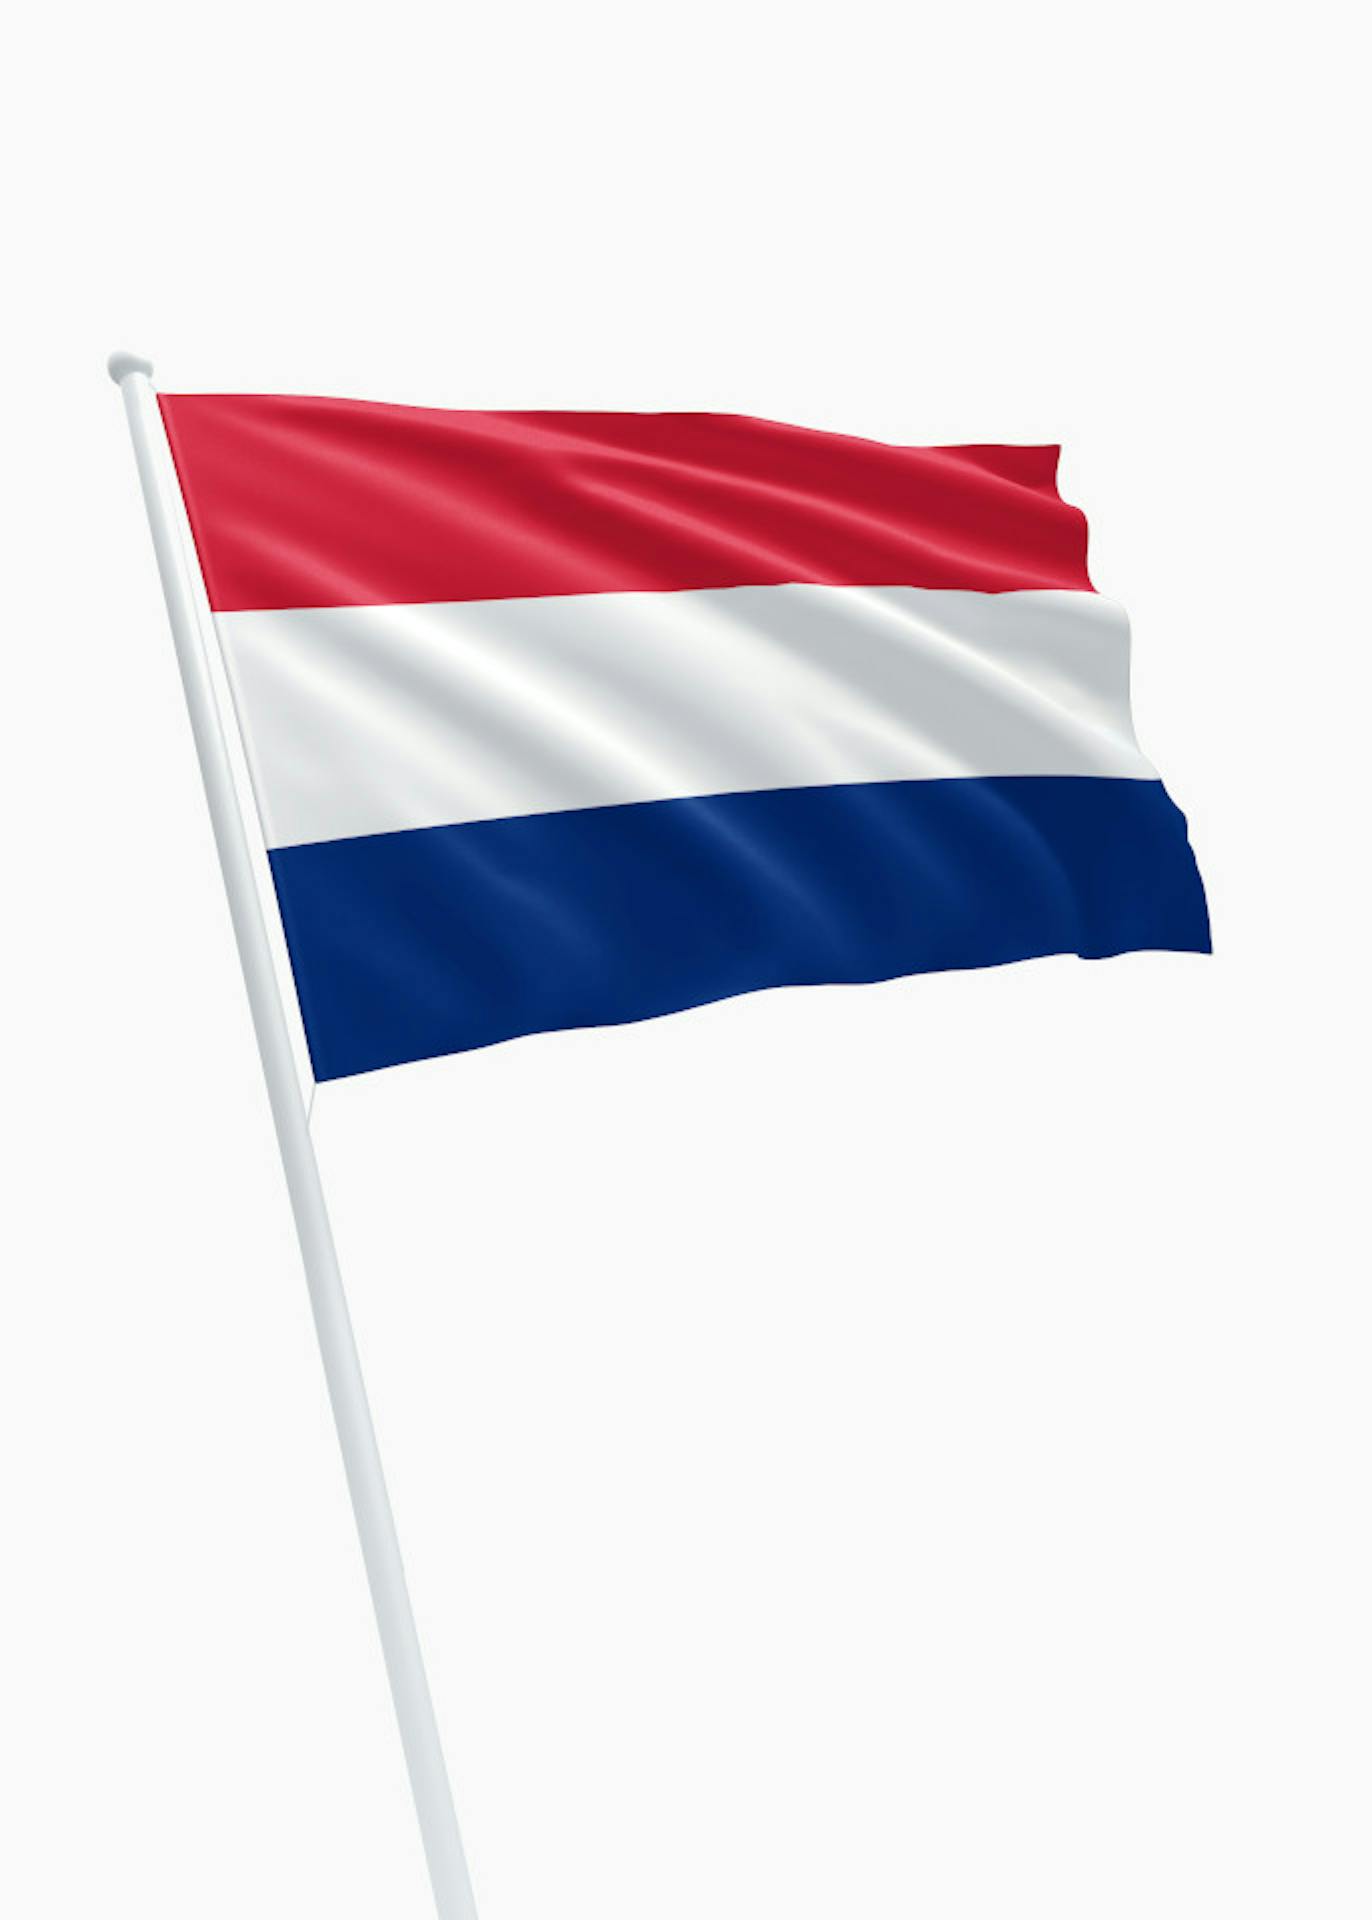 Discreet vriendelijke groet Piepen Rood-wit-marine blauwe vlag – Online bestellen – DVC